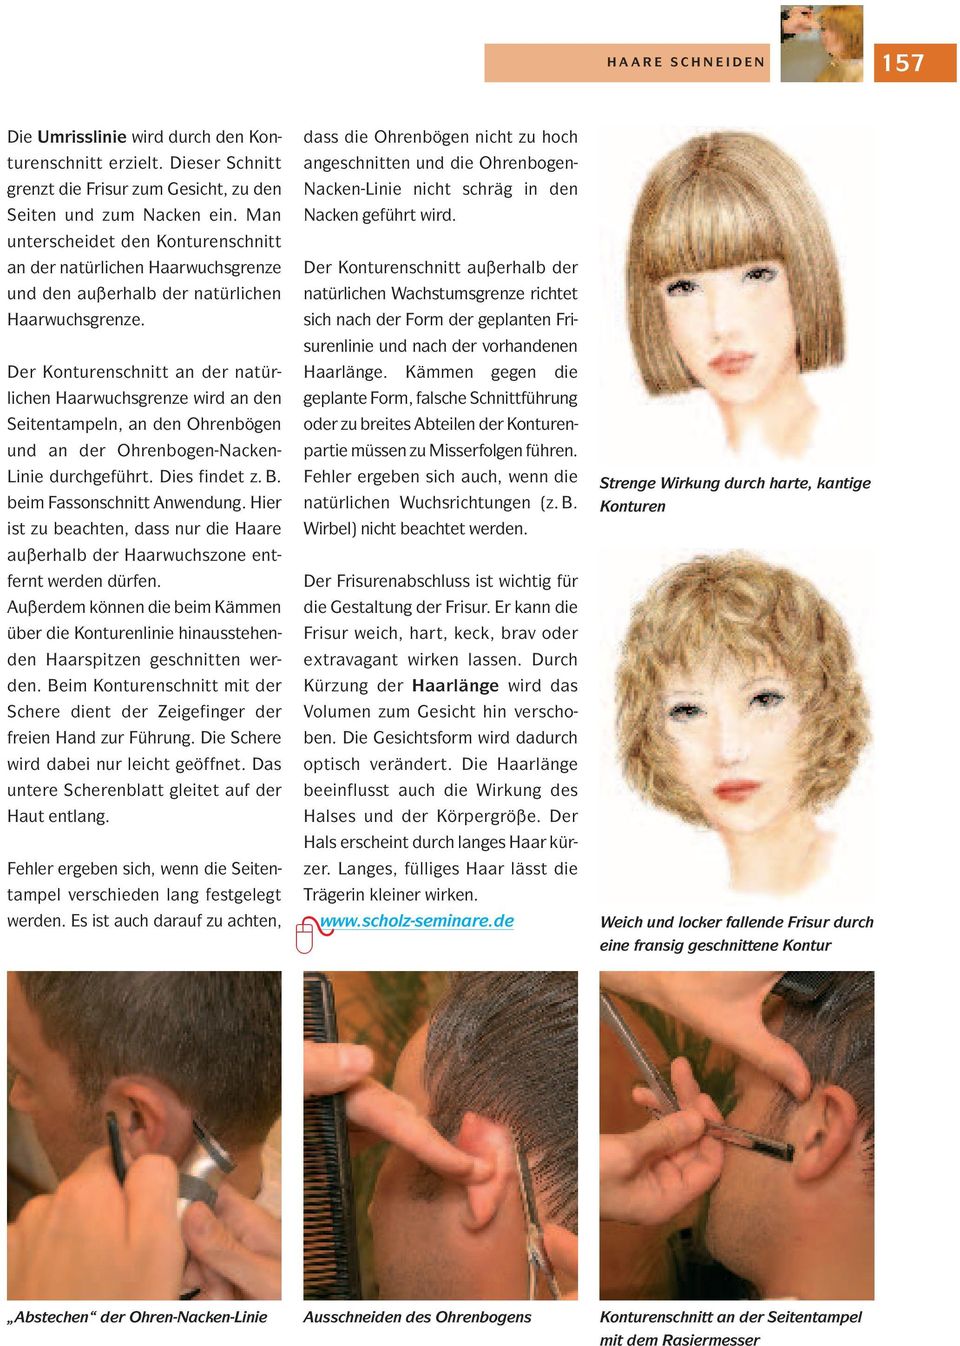 Der Konturenschnitt an der natürlichen Haarwuchsgrenze wird an den Seitentampeln, an den Ohrenbögen und an der Ohrenbogen-Nacken- Linie durchgeführt. Dies findet z. B. beim Fassonschnitt Anwendung.